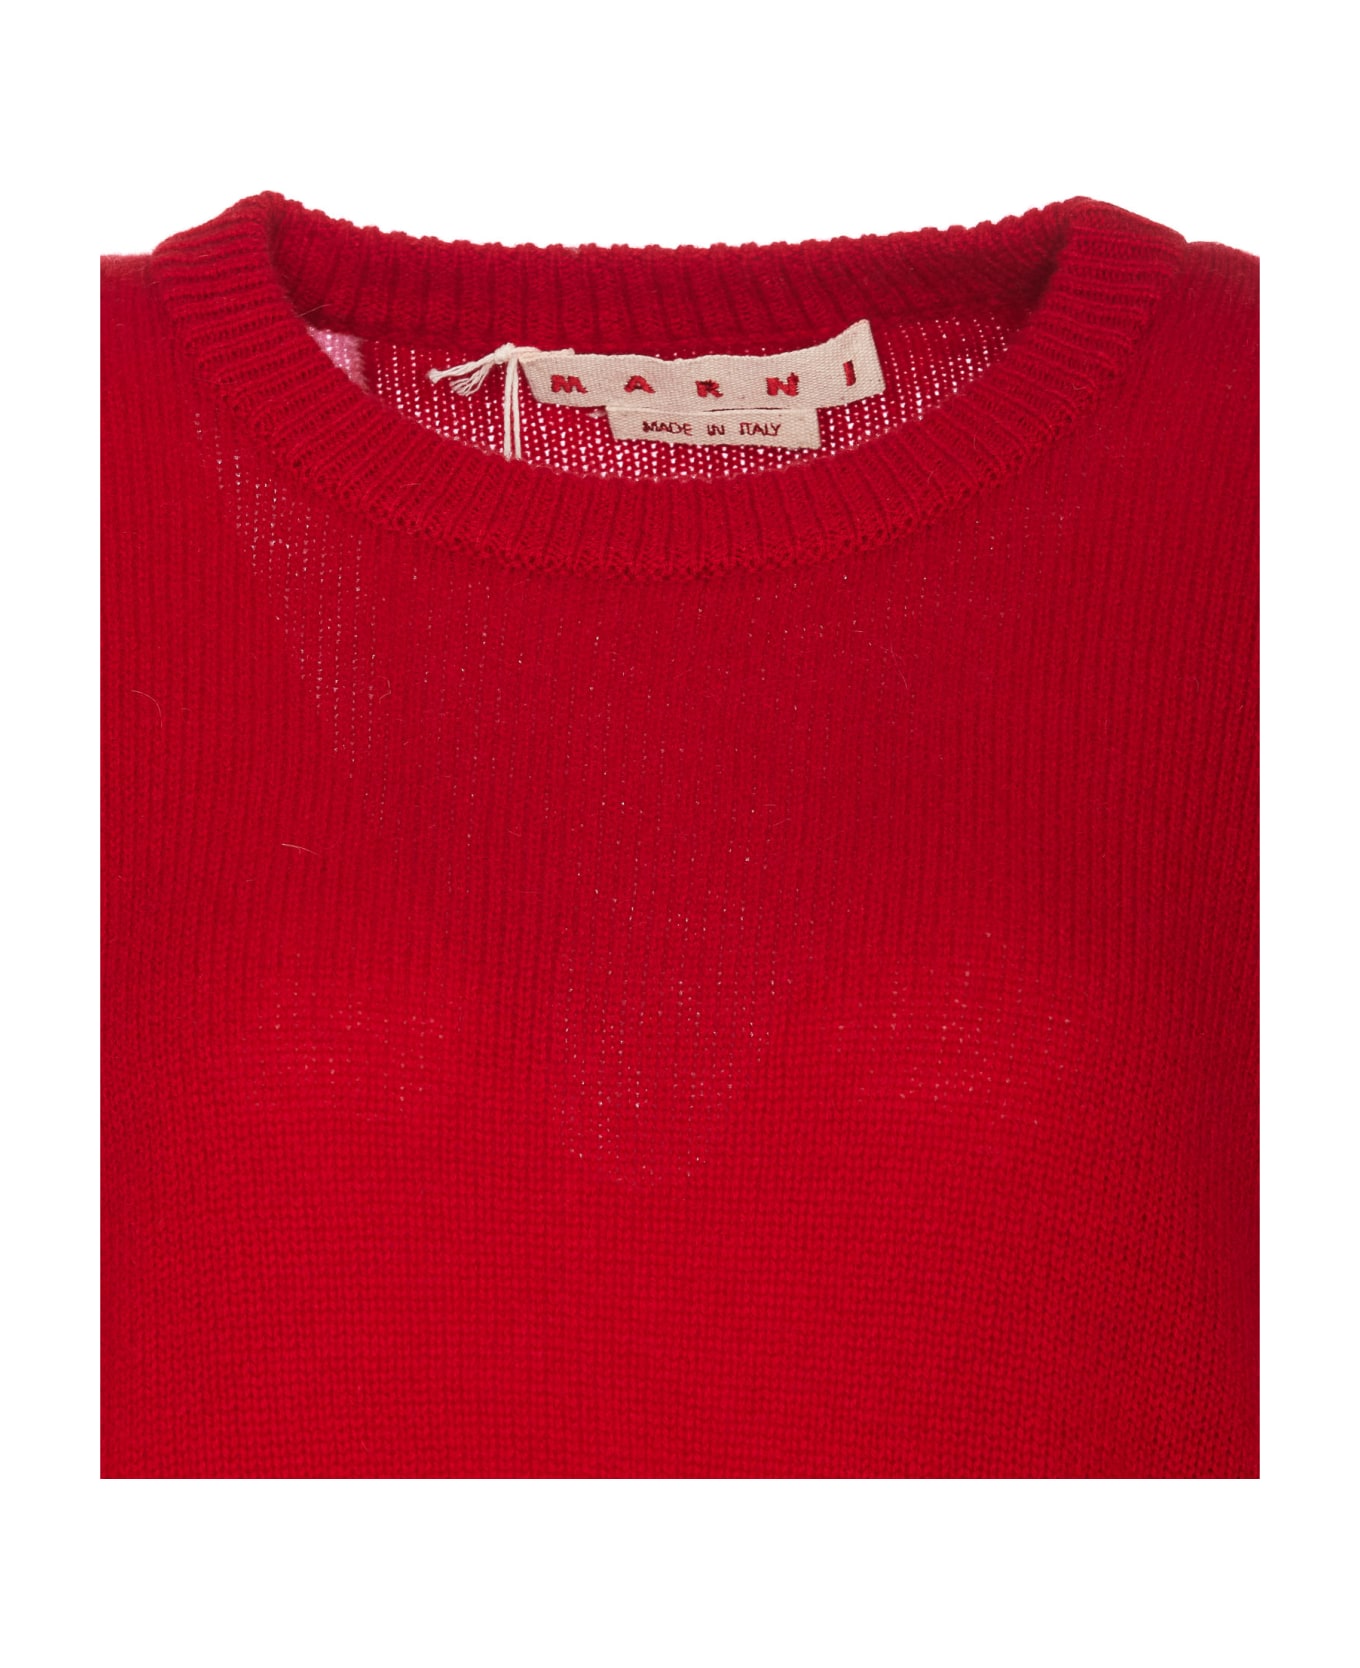 Marni Sweater - MultiColour